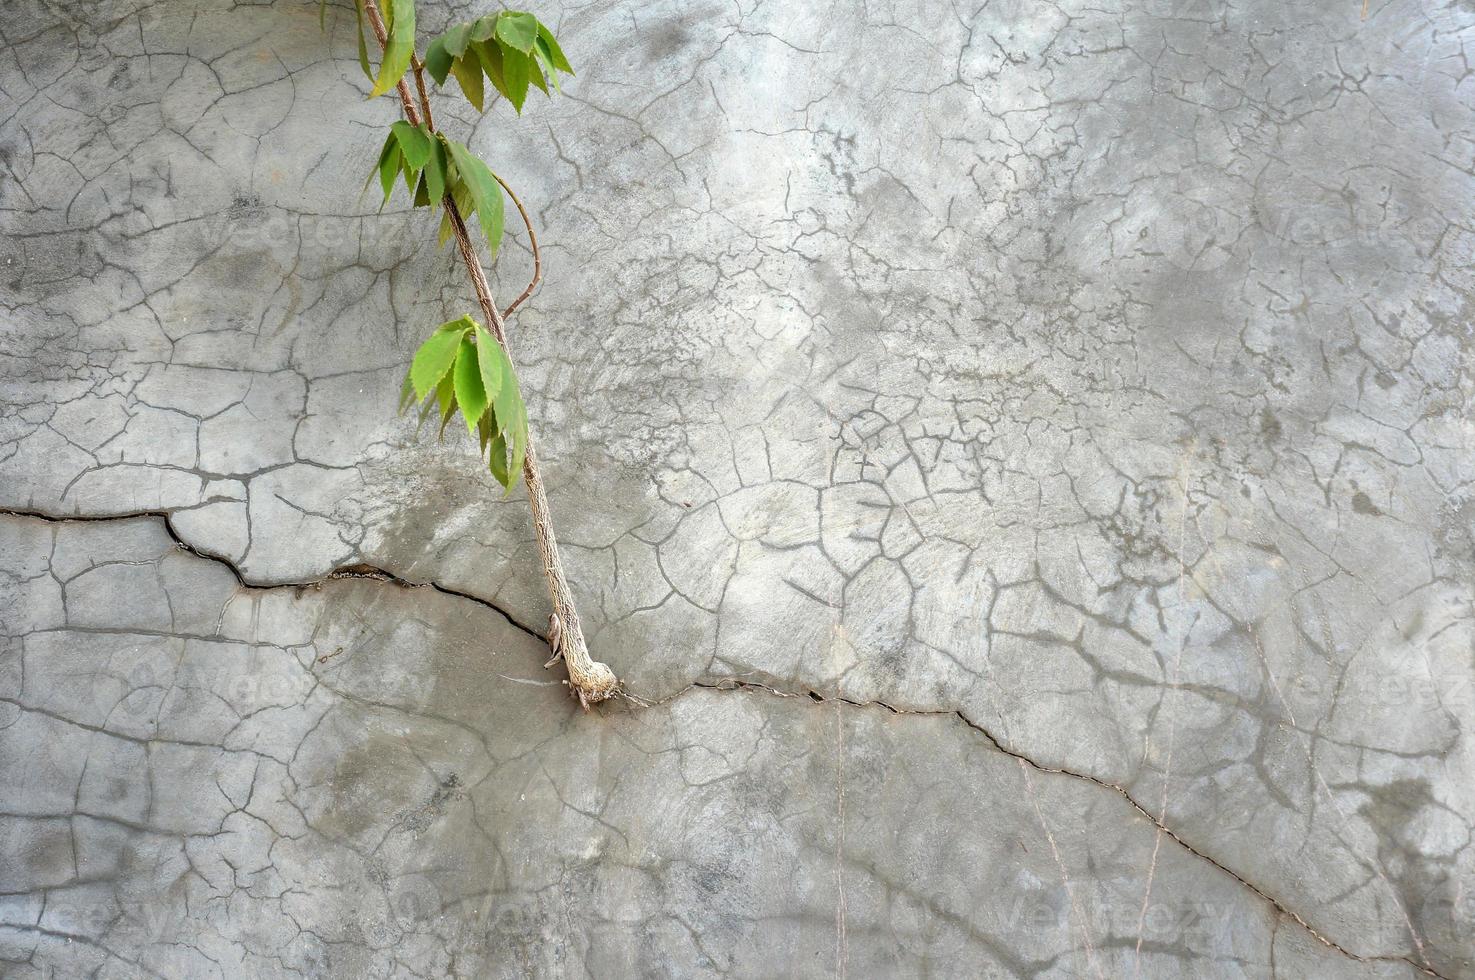 pflanze wächst auf rissiger betonwand auf foto